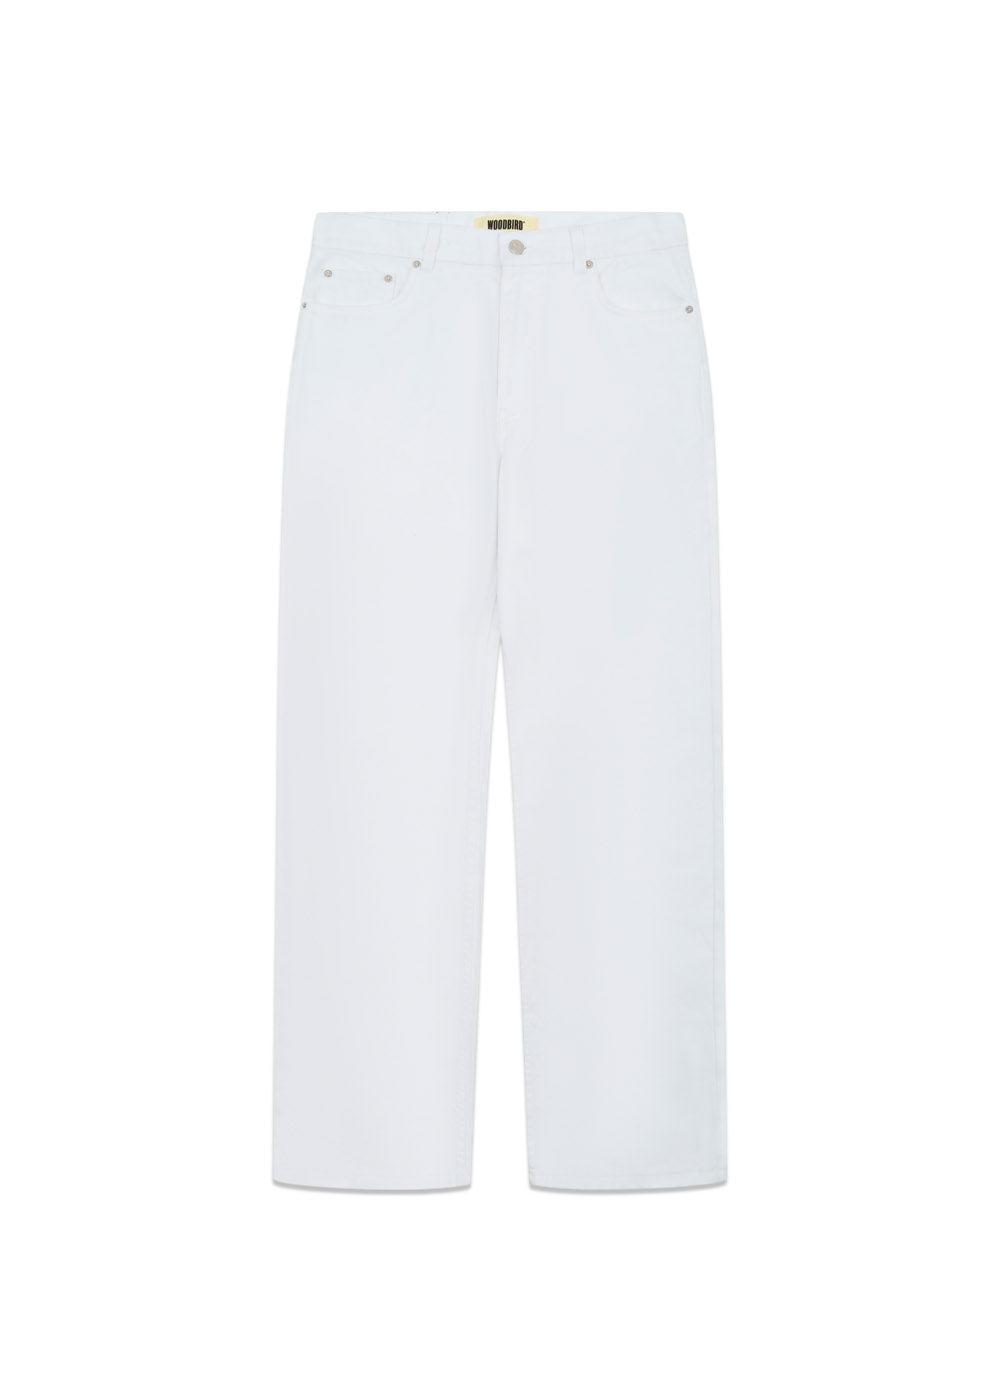 Rami White Jeans - White